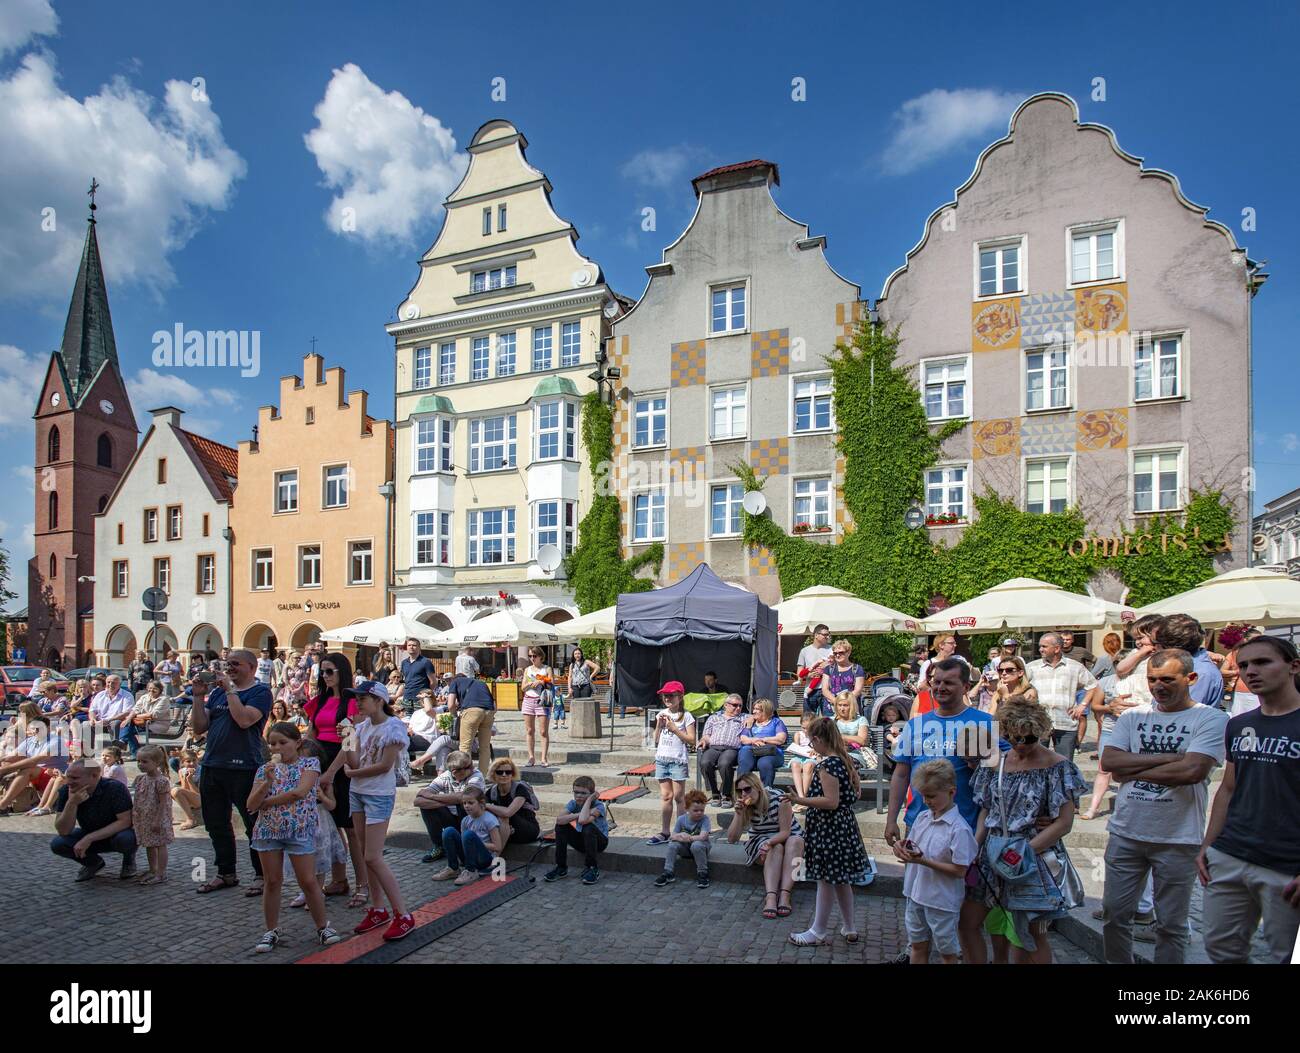 Olsztyn (Allenstein): Veranstaltung auf dem Marktplatz, Danzig | usage worldwide Stock Photo